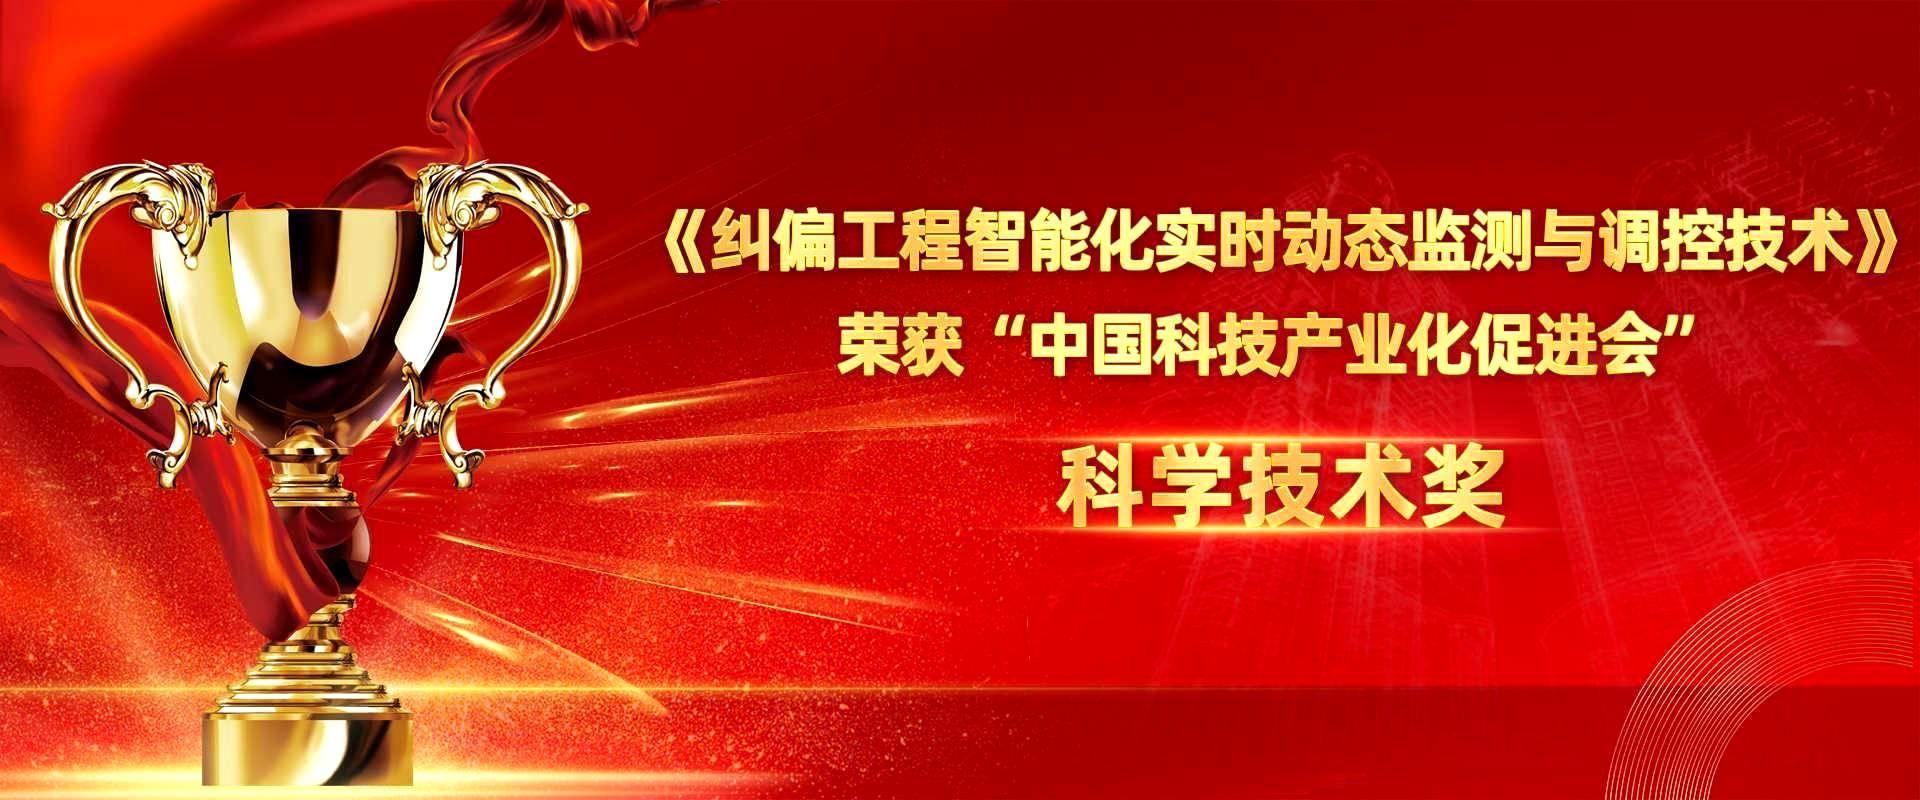 江苏九游会特种技术工程有限公司荣获中国科技产业化促进会科技创新二等奖